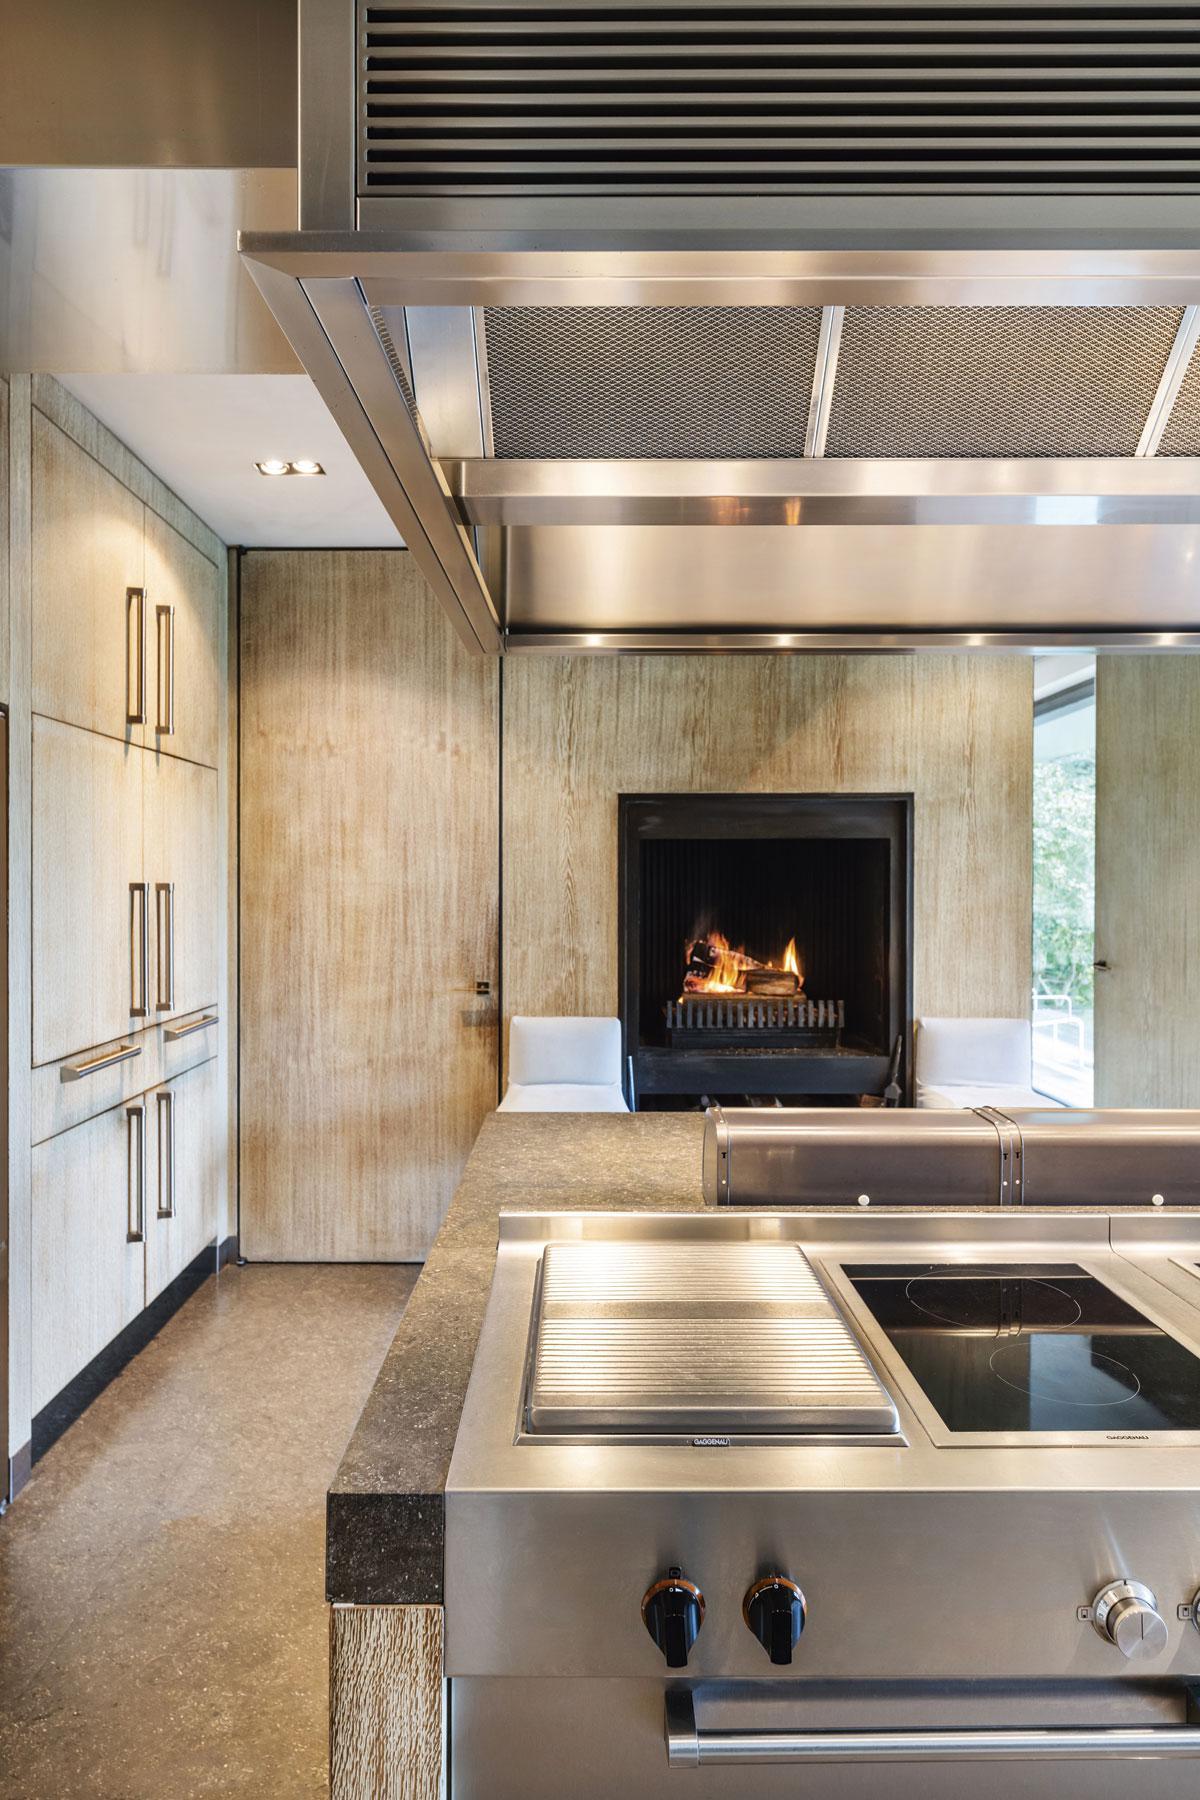 La cuisine spacieuse avec cheminée est le cœur de la maison.